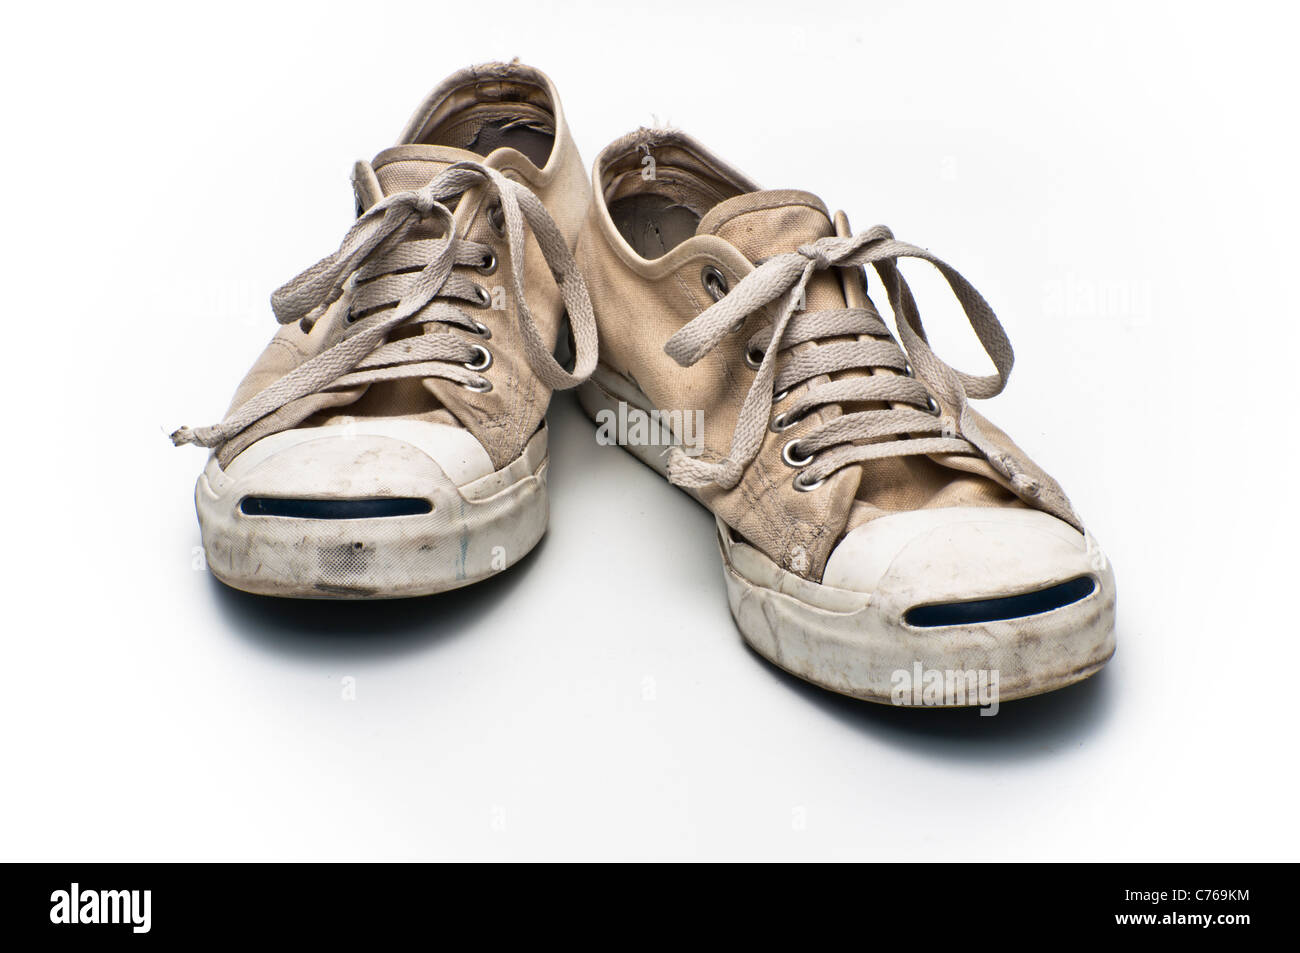 scarpe converse vecchie - aimas.it